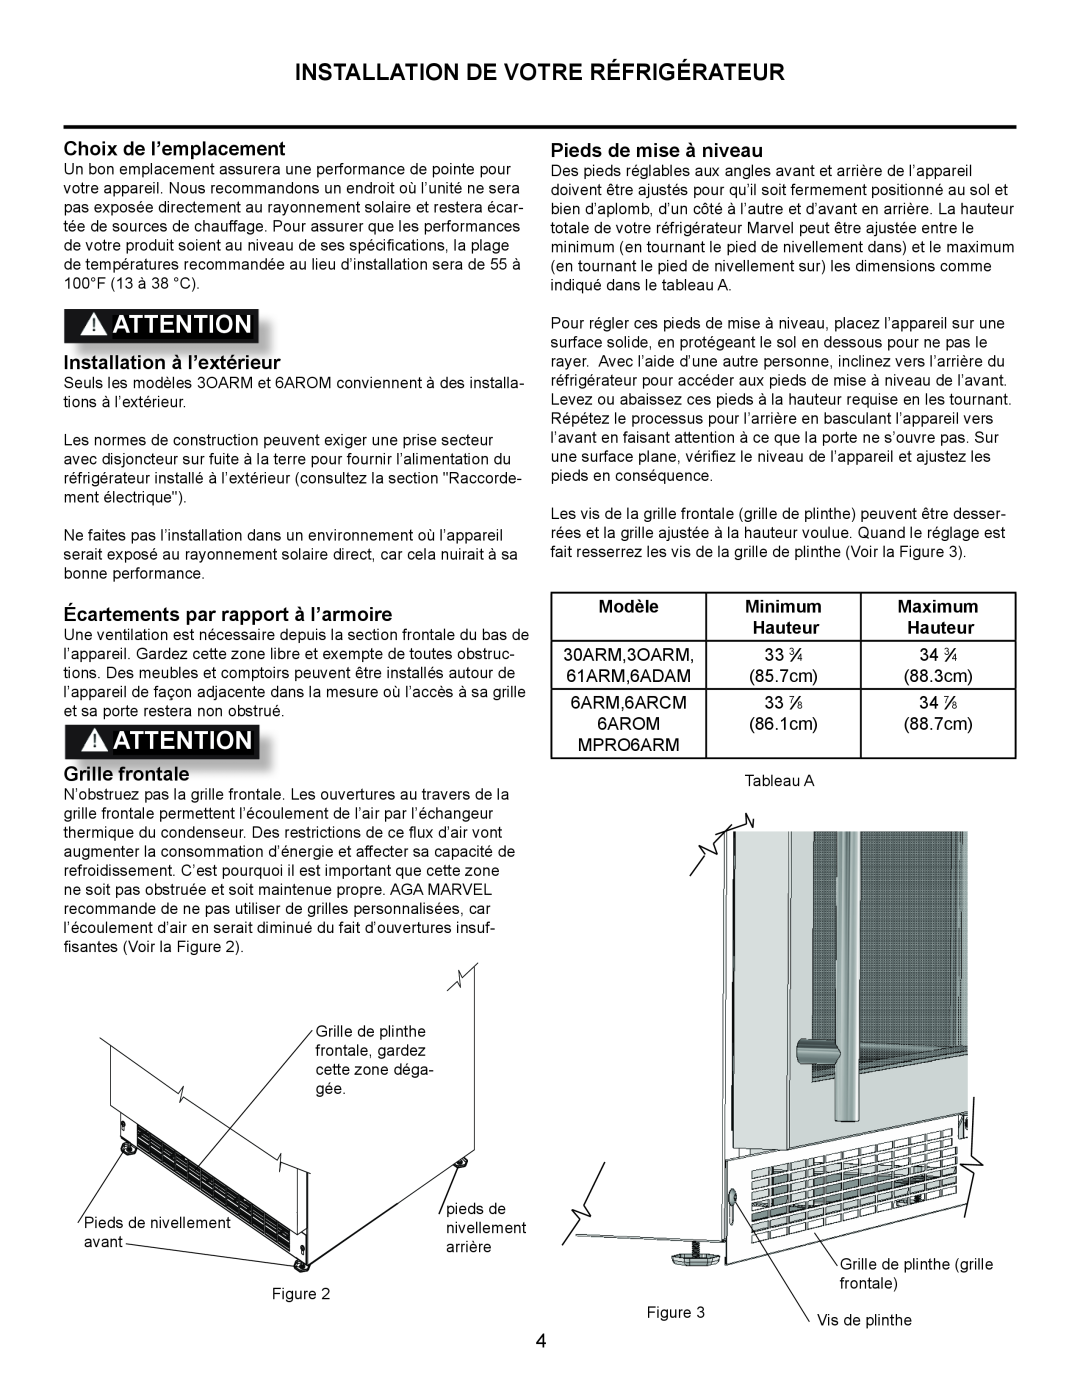 Marvel Industries 61ARMBBOL manual Installation De Votre Réfrigérateur, Choix de l’emplacement, Installation à l’extérieur 